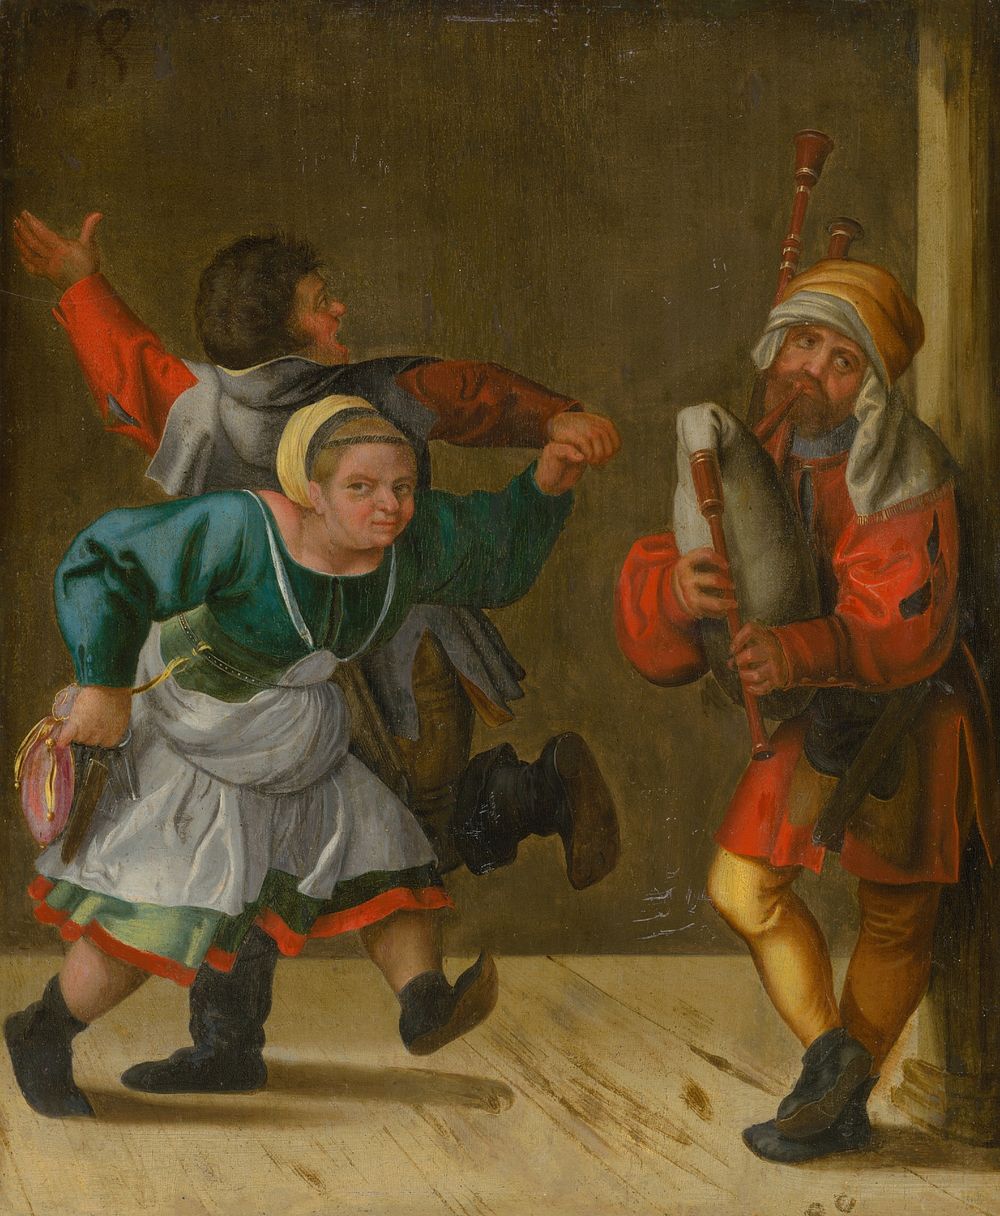 Village dance by Albrecht Dürer